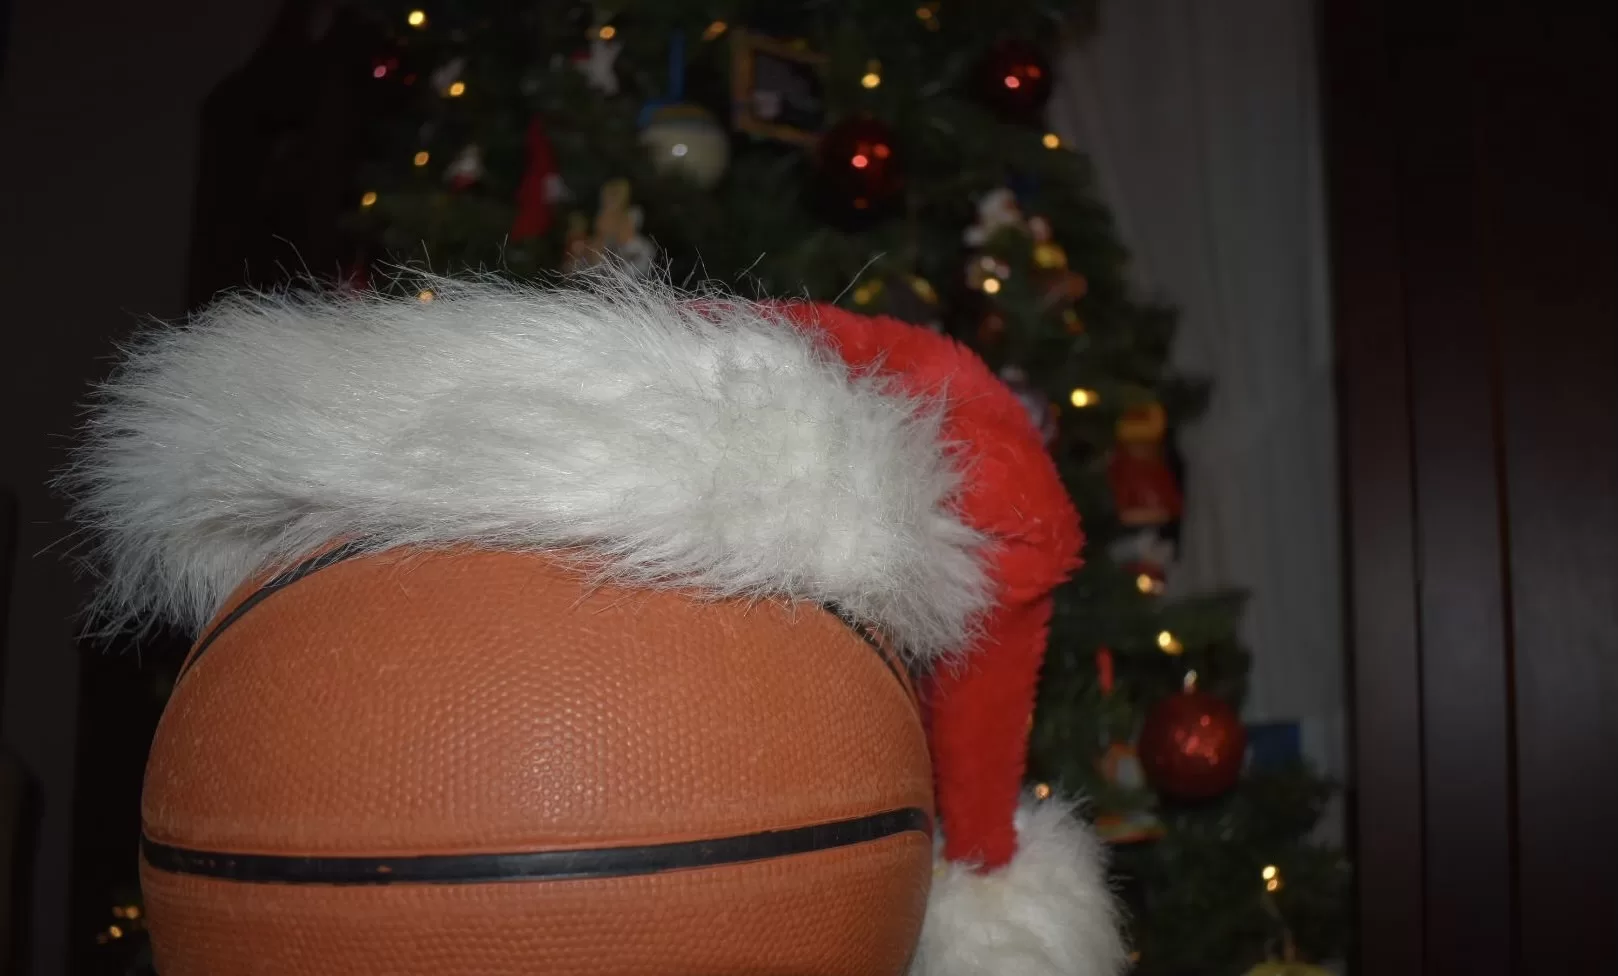 NBA During the Holiday Season